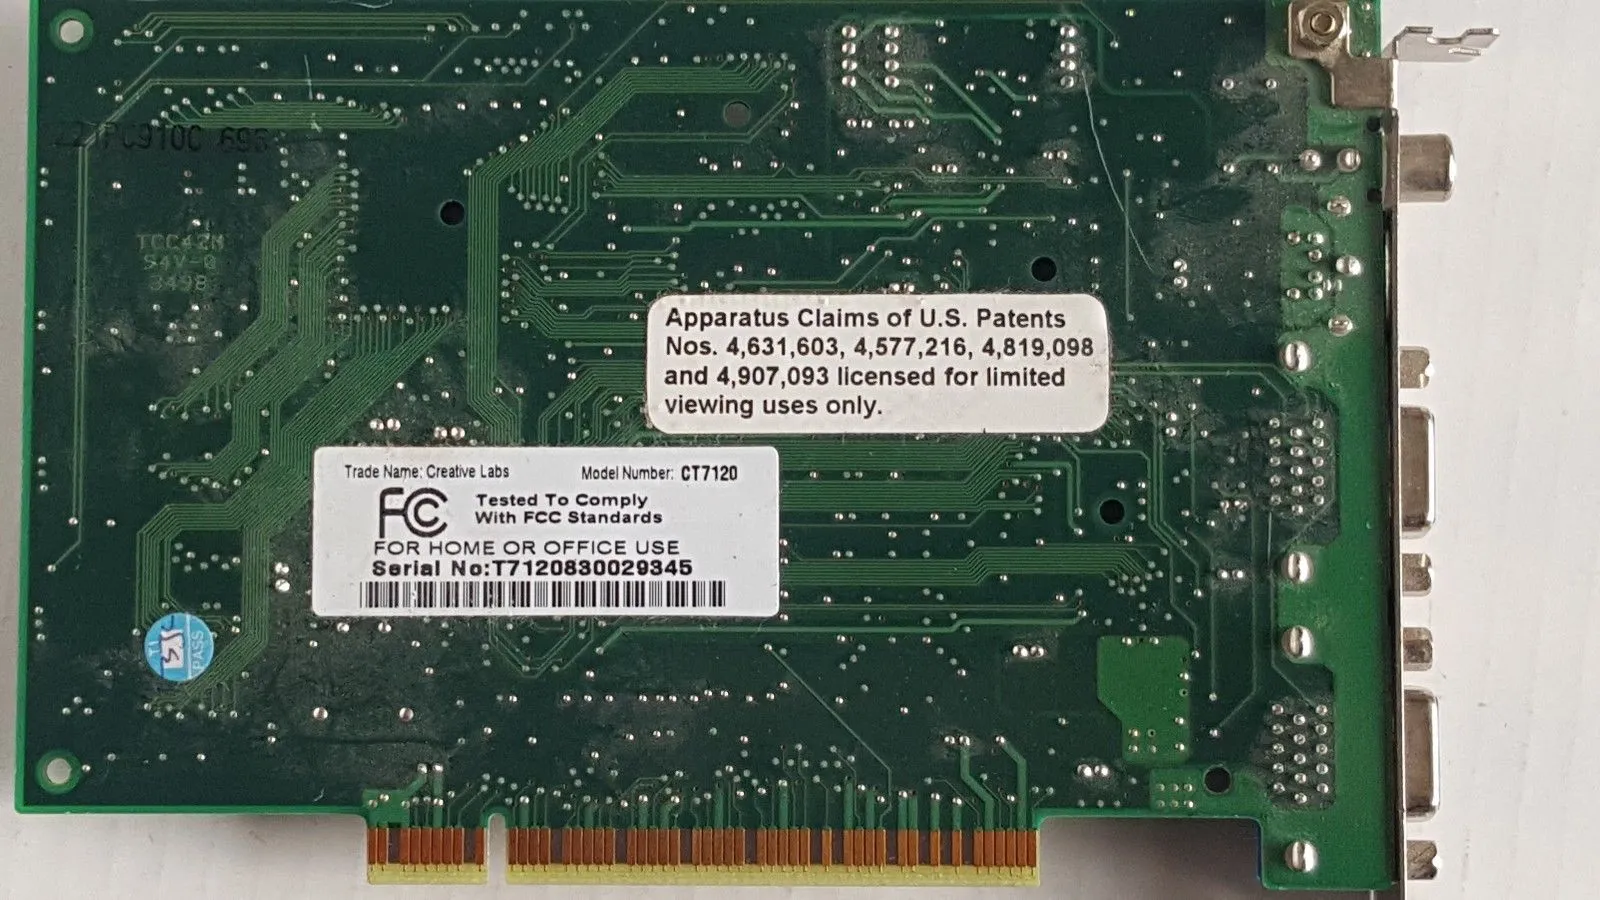 Creative labs PC-DVD CT7120 DXR2 Decoder PCI Card